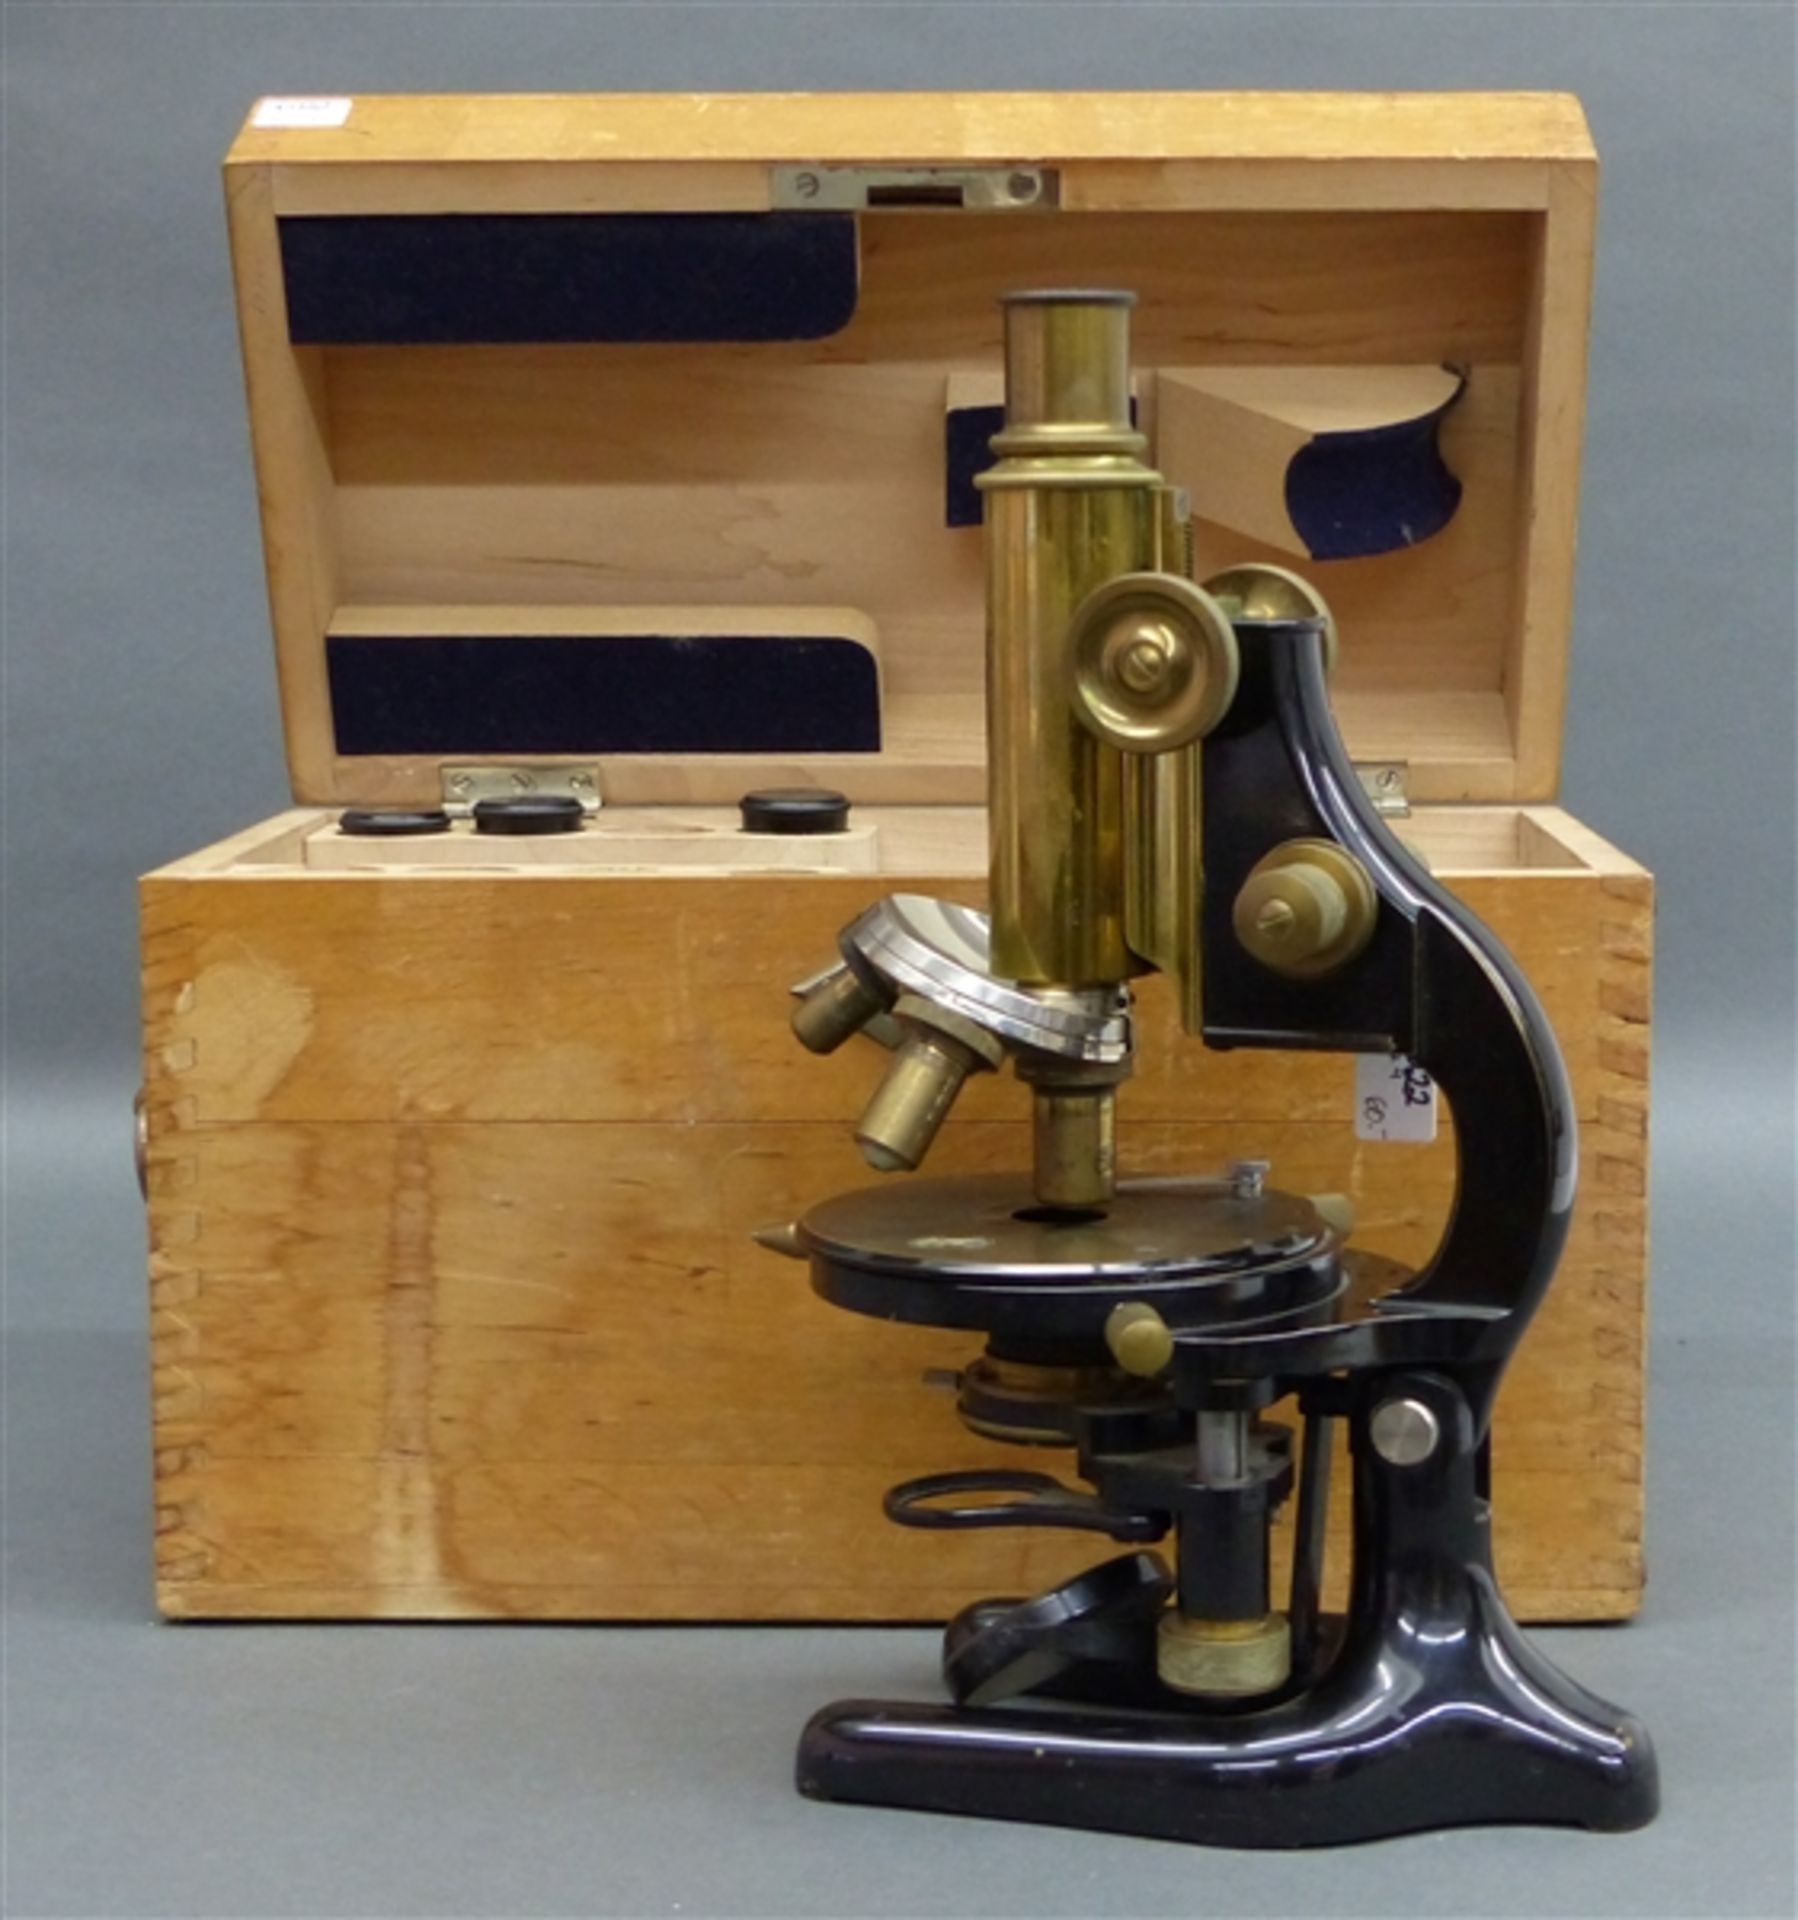 Mikroskop Carl Zeiss Jena, No. 143 668, Messing, schwenkbar, im Holzkasten, teilweise schwarz